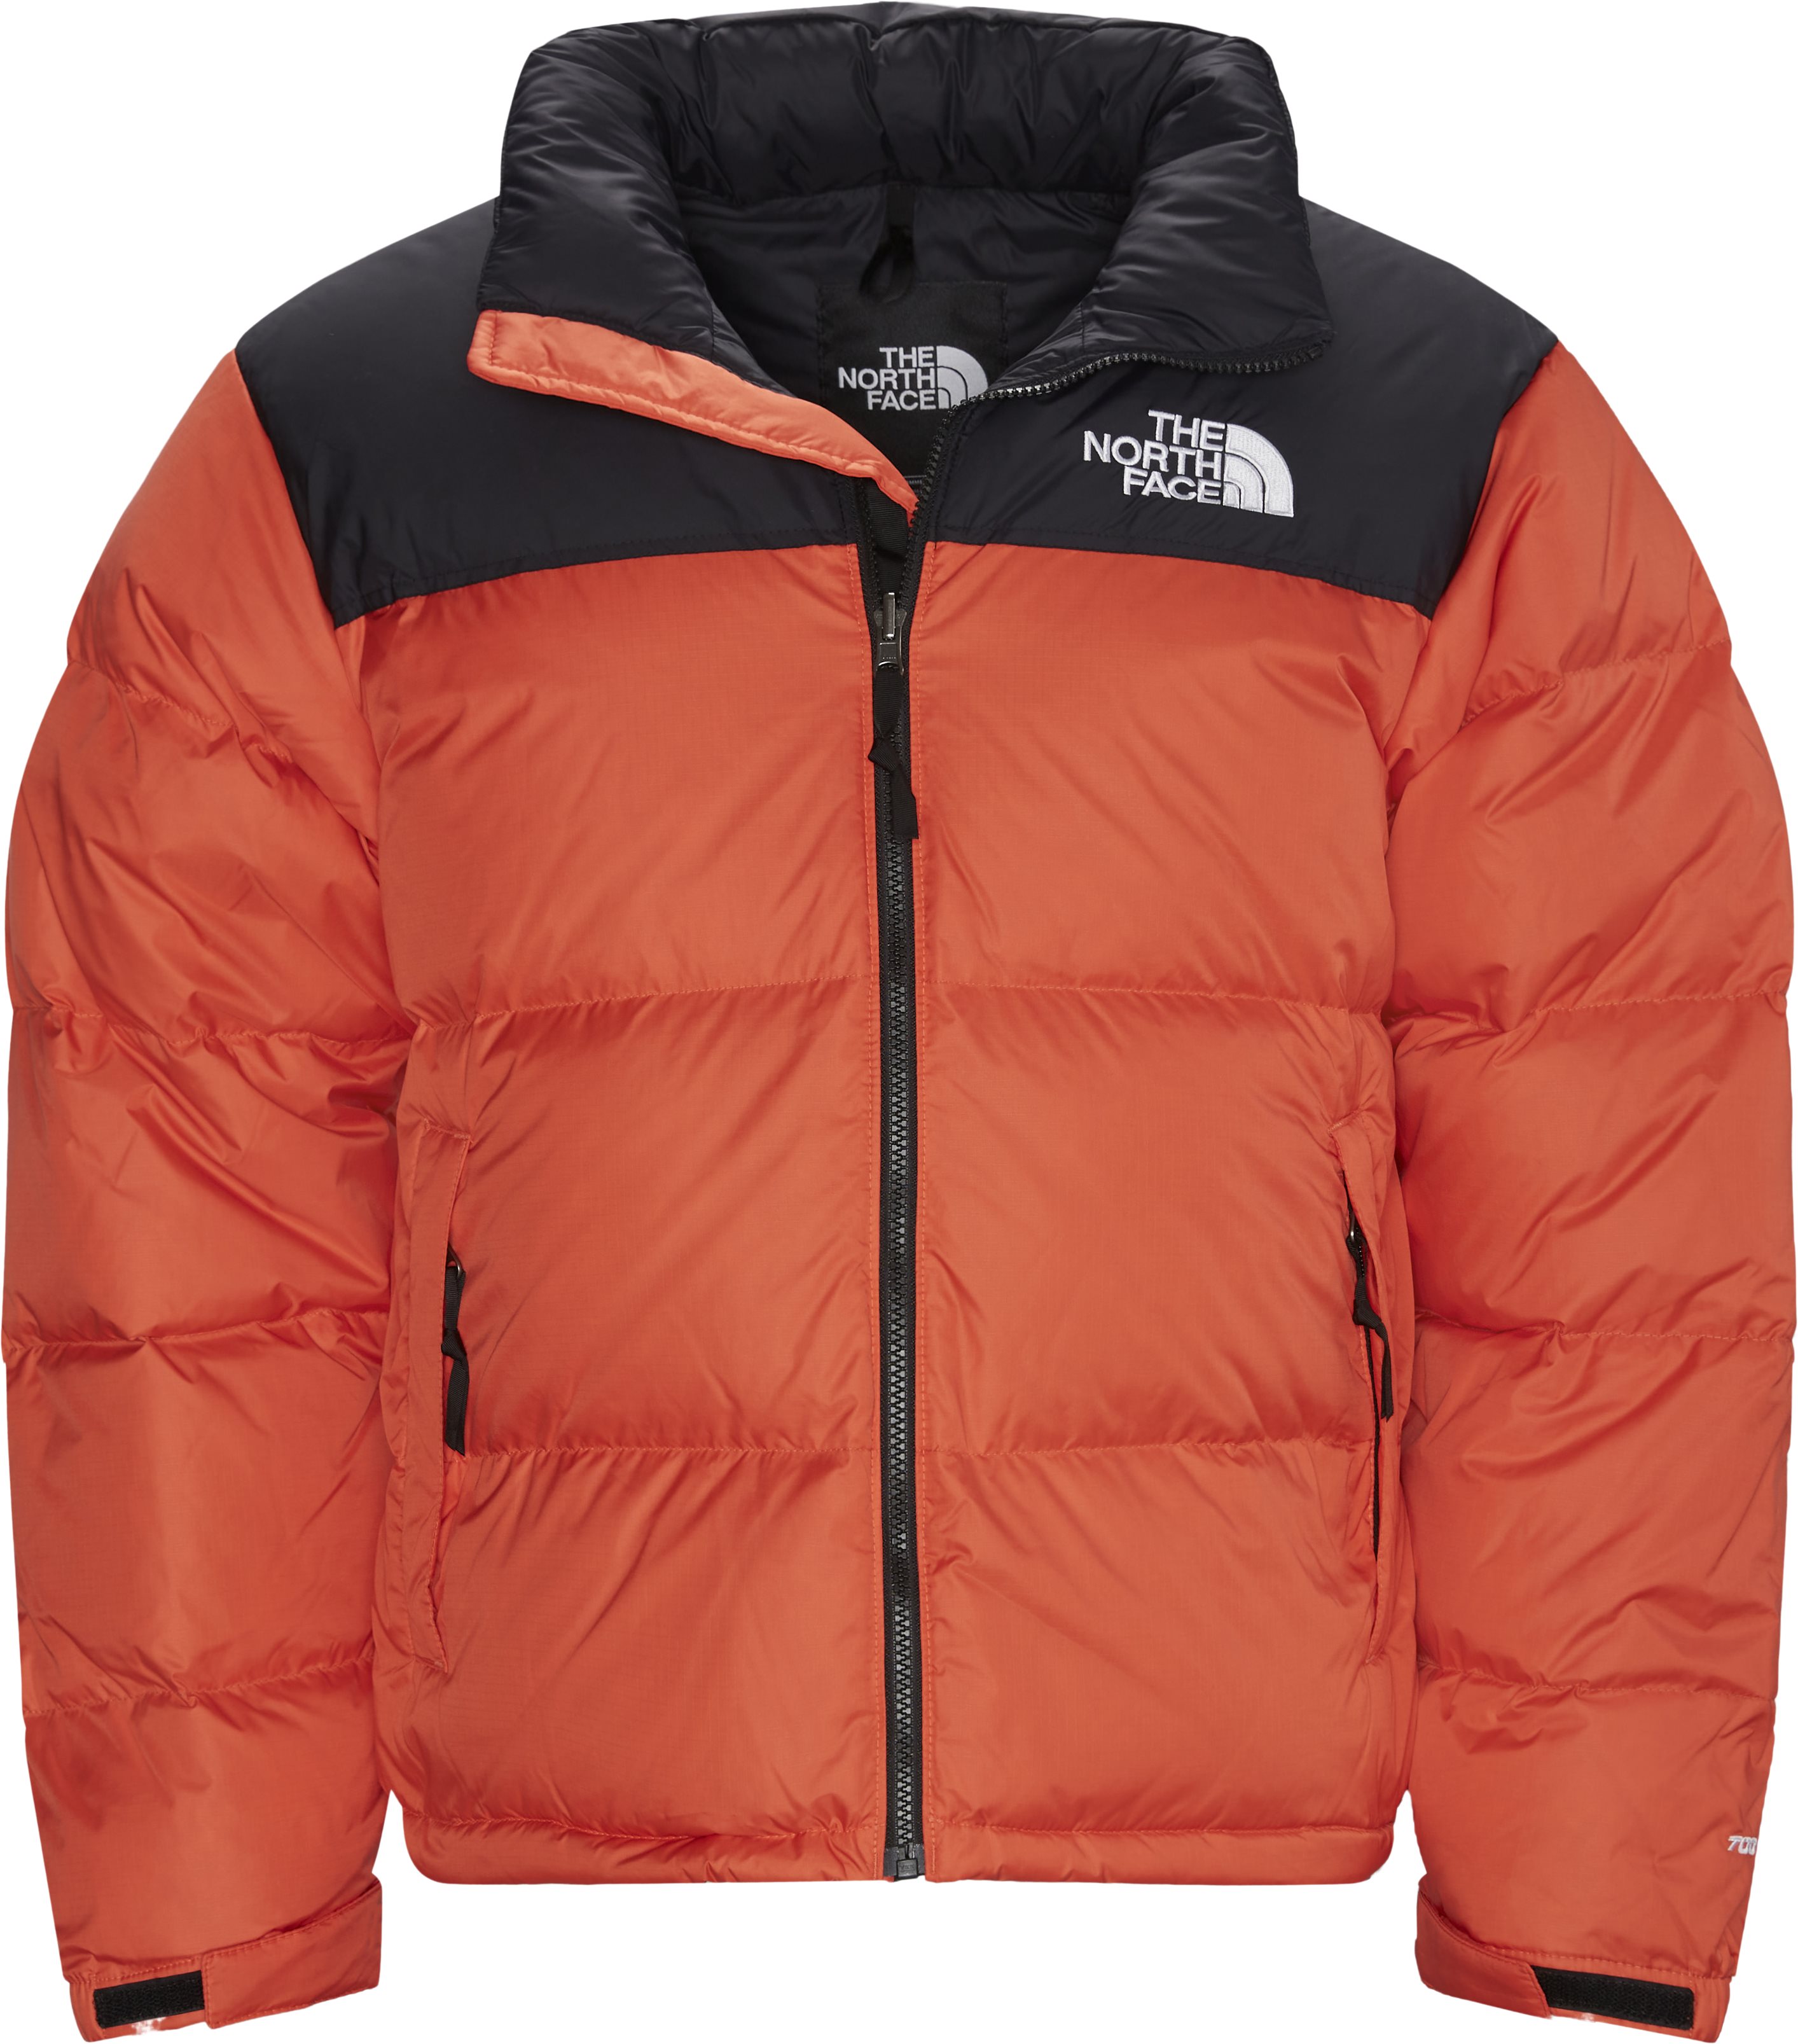 Nuptse Jacket - Jackets - Regular fit - Orange